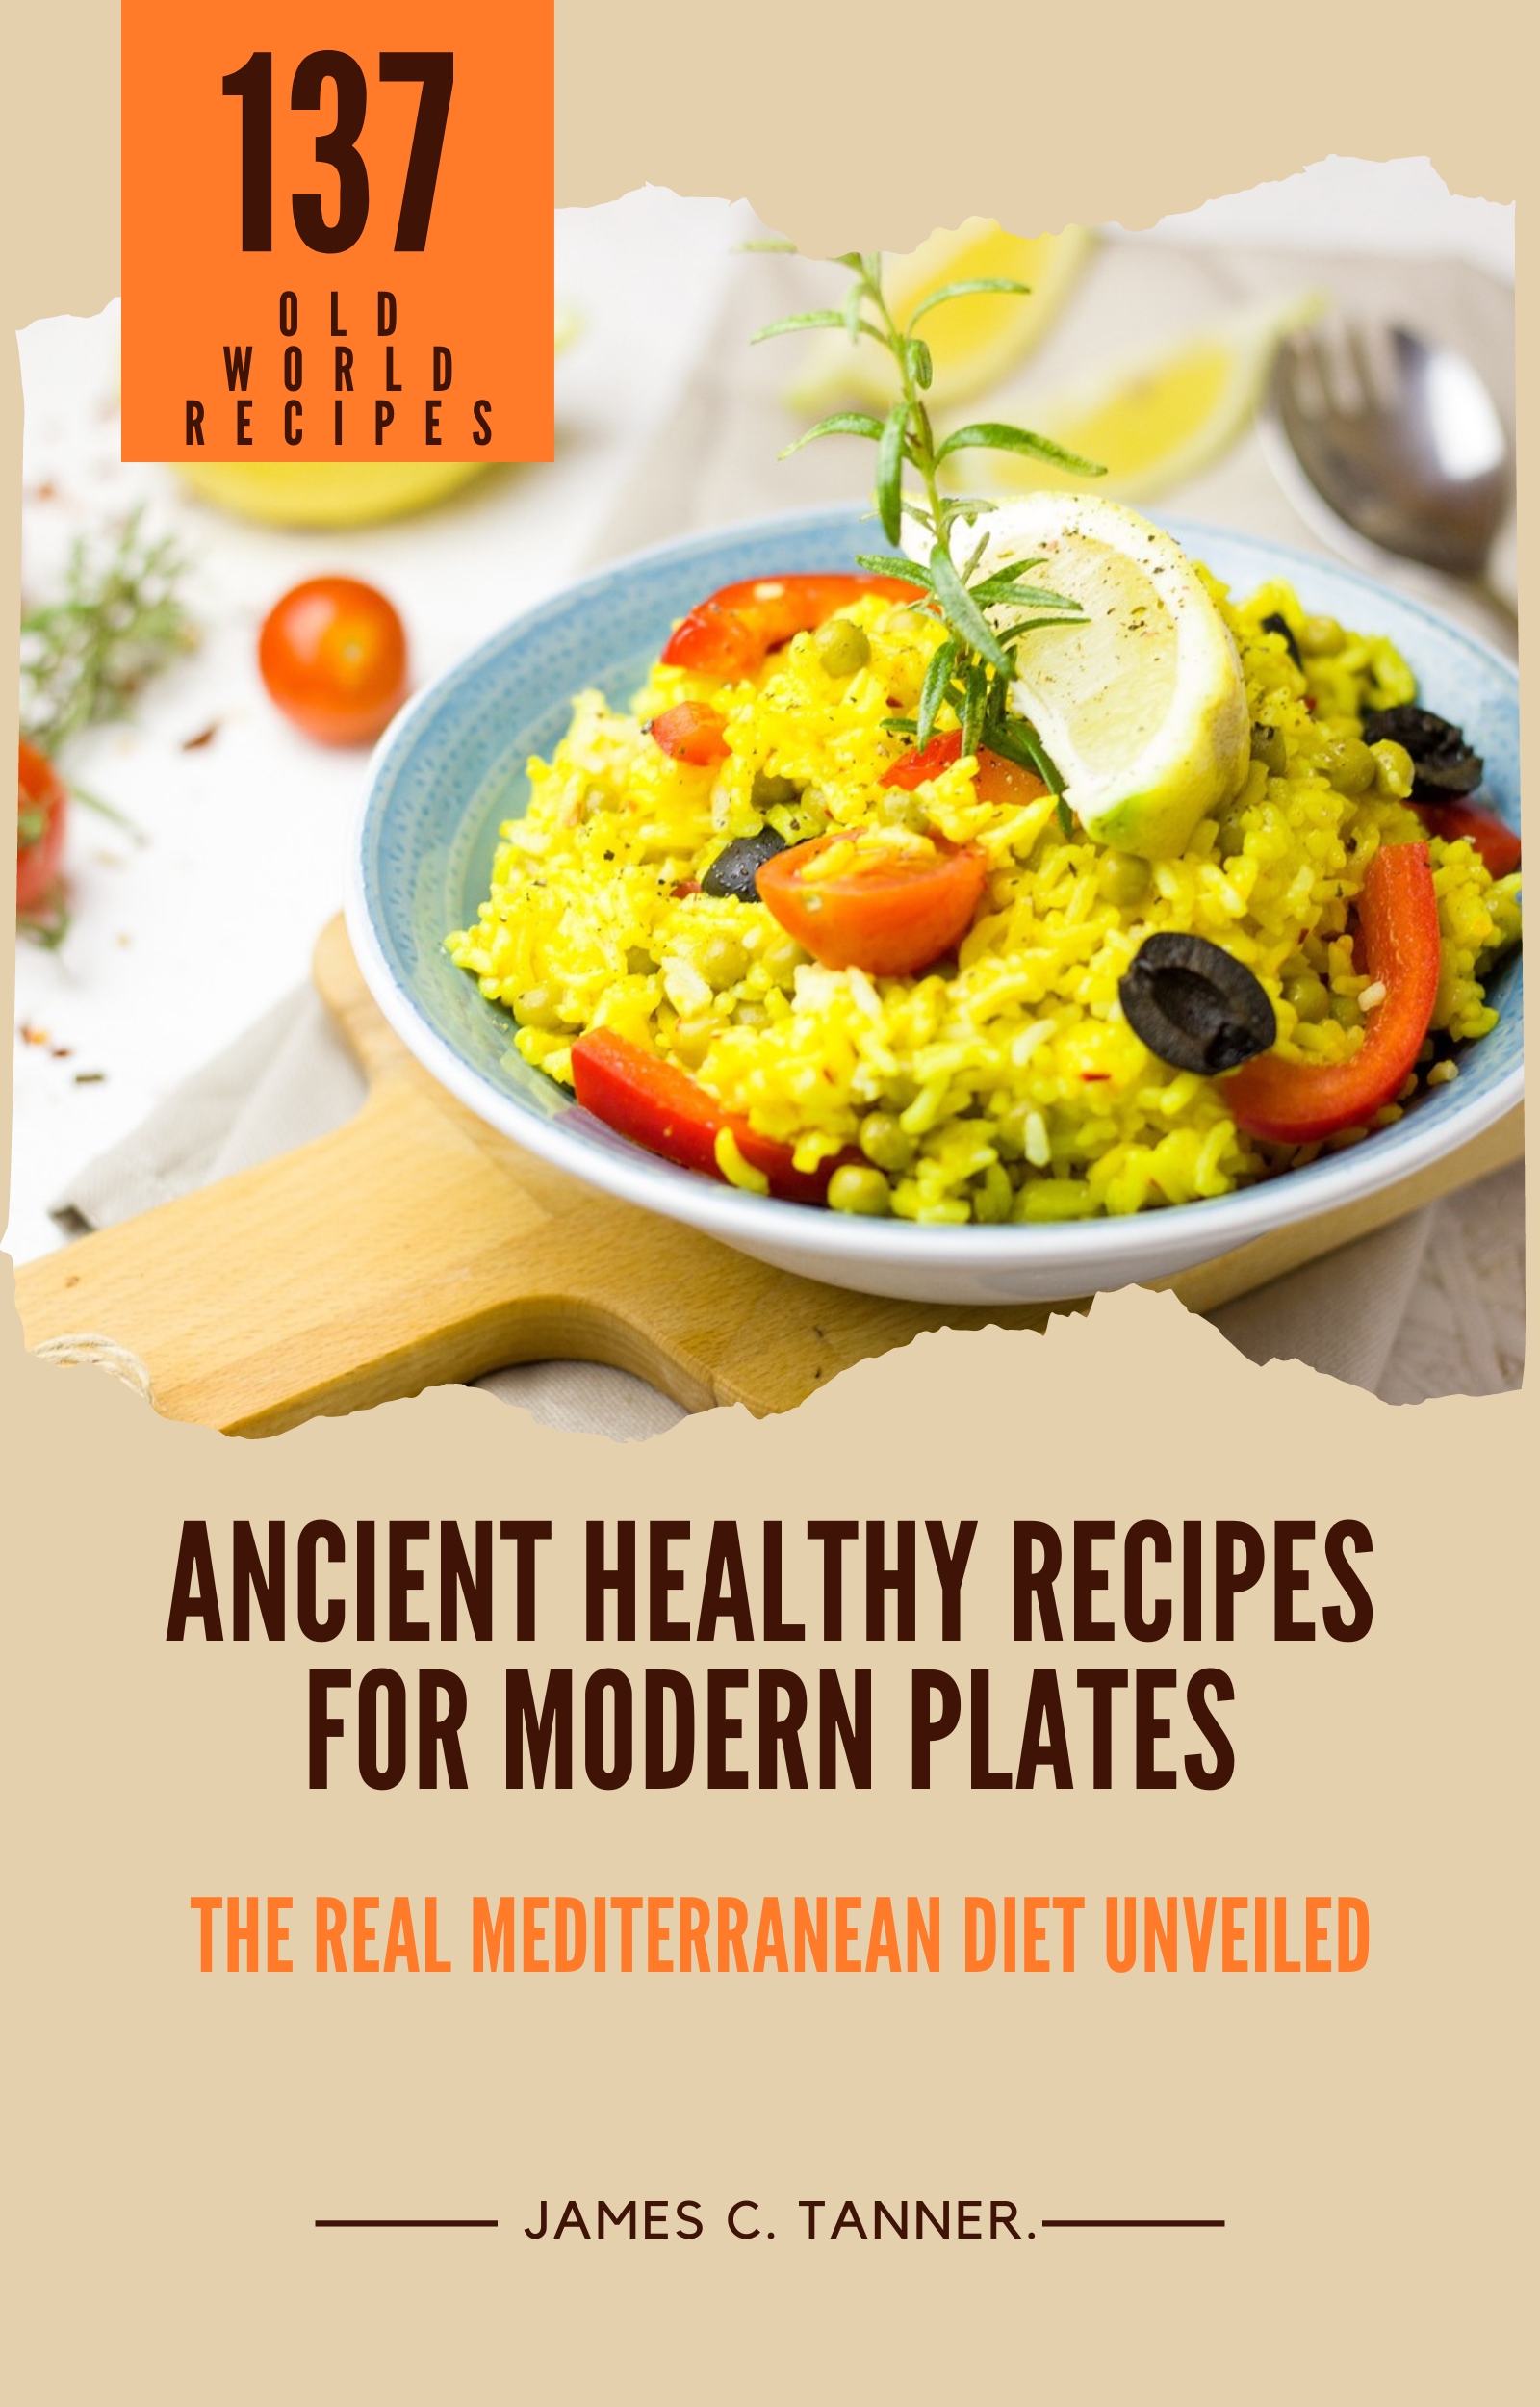 ancient recipes, modern plates, mediterranean diet